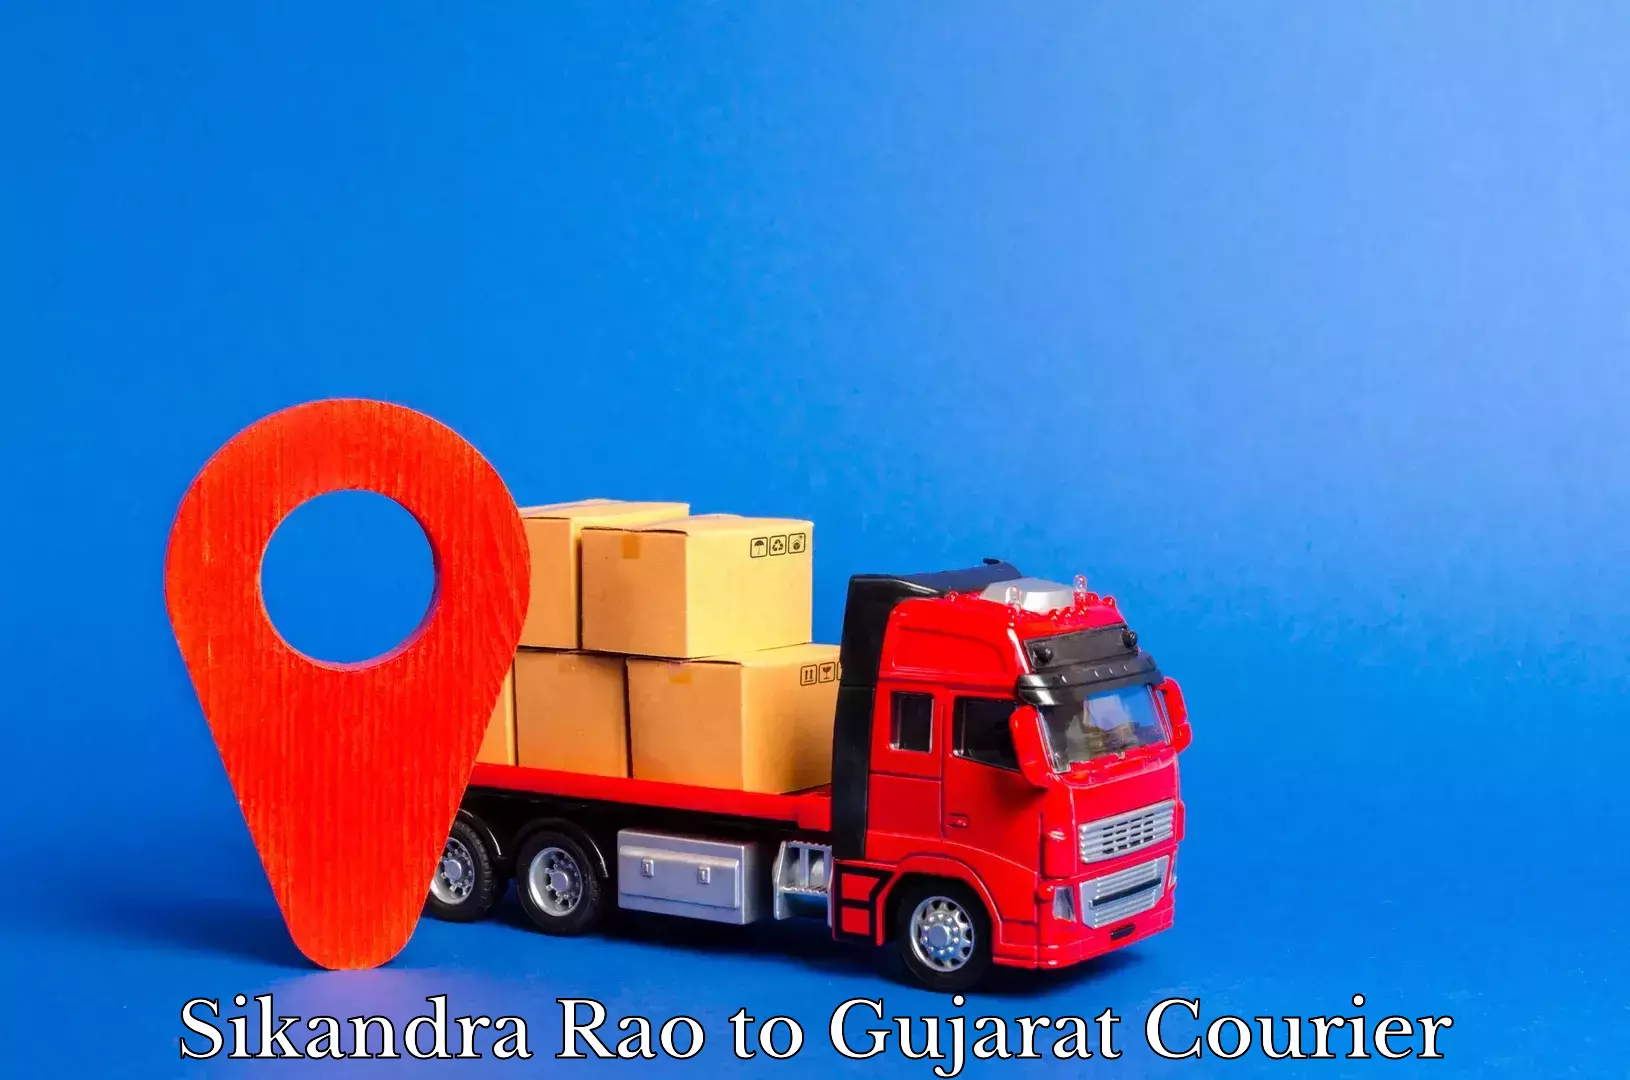 Courier insurance Sikandra Rao to Gujarat